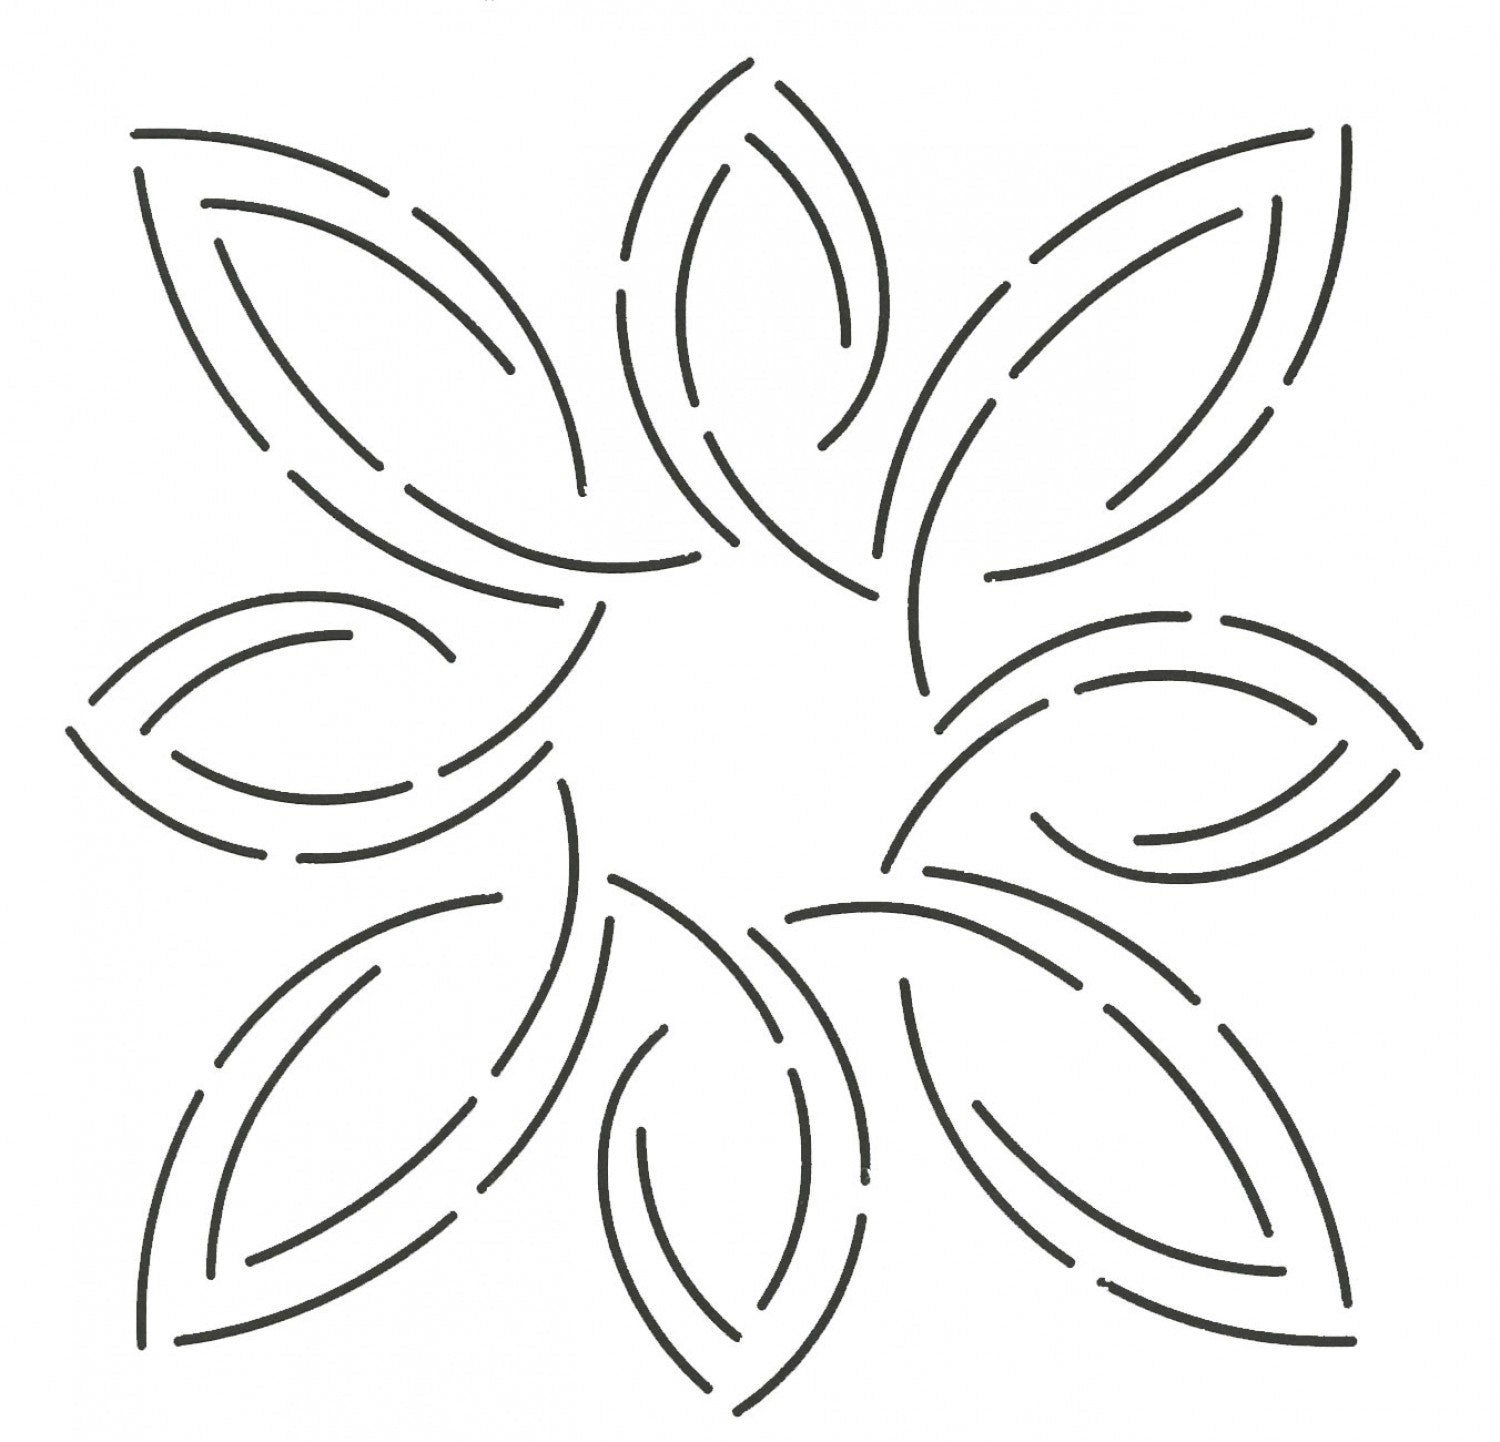 Quilting Stencil - Pear Leaf Medallion